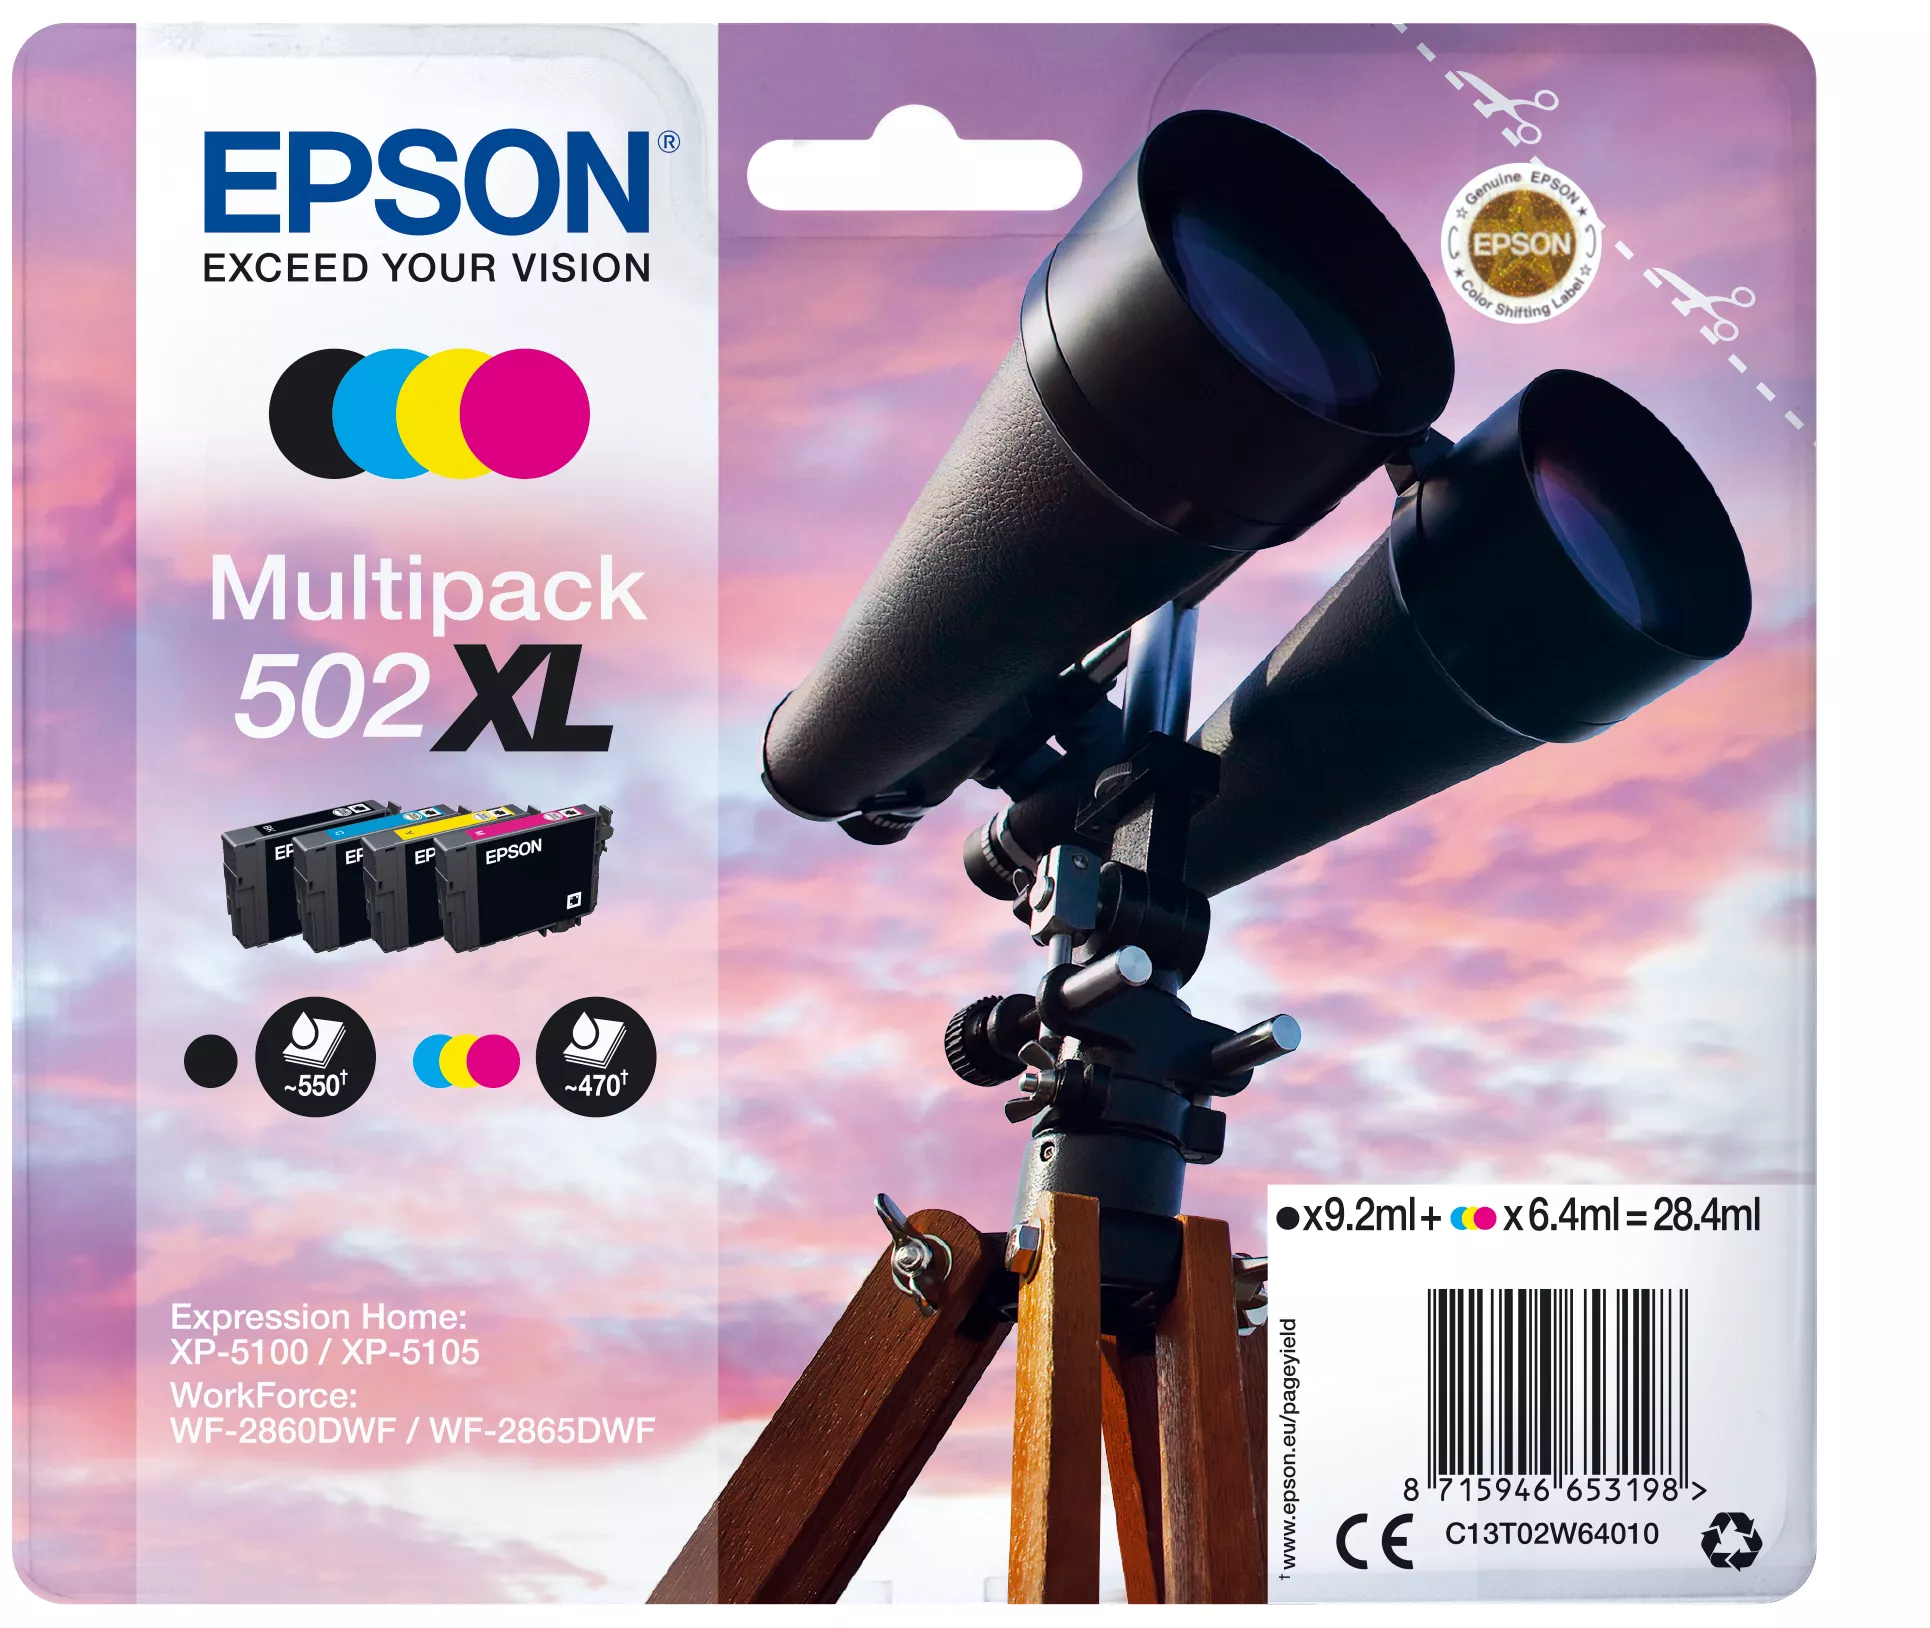 Achat Cartouches d'encre EPSON Multipack 4-colours 502XL Ink SEC sur hello RSE